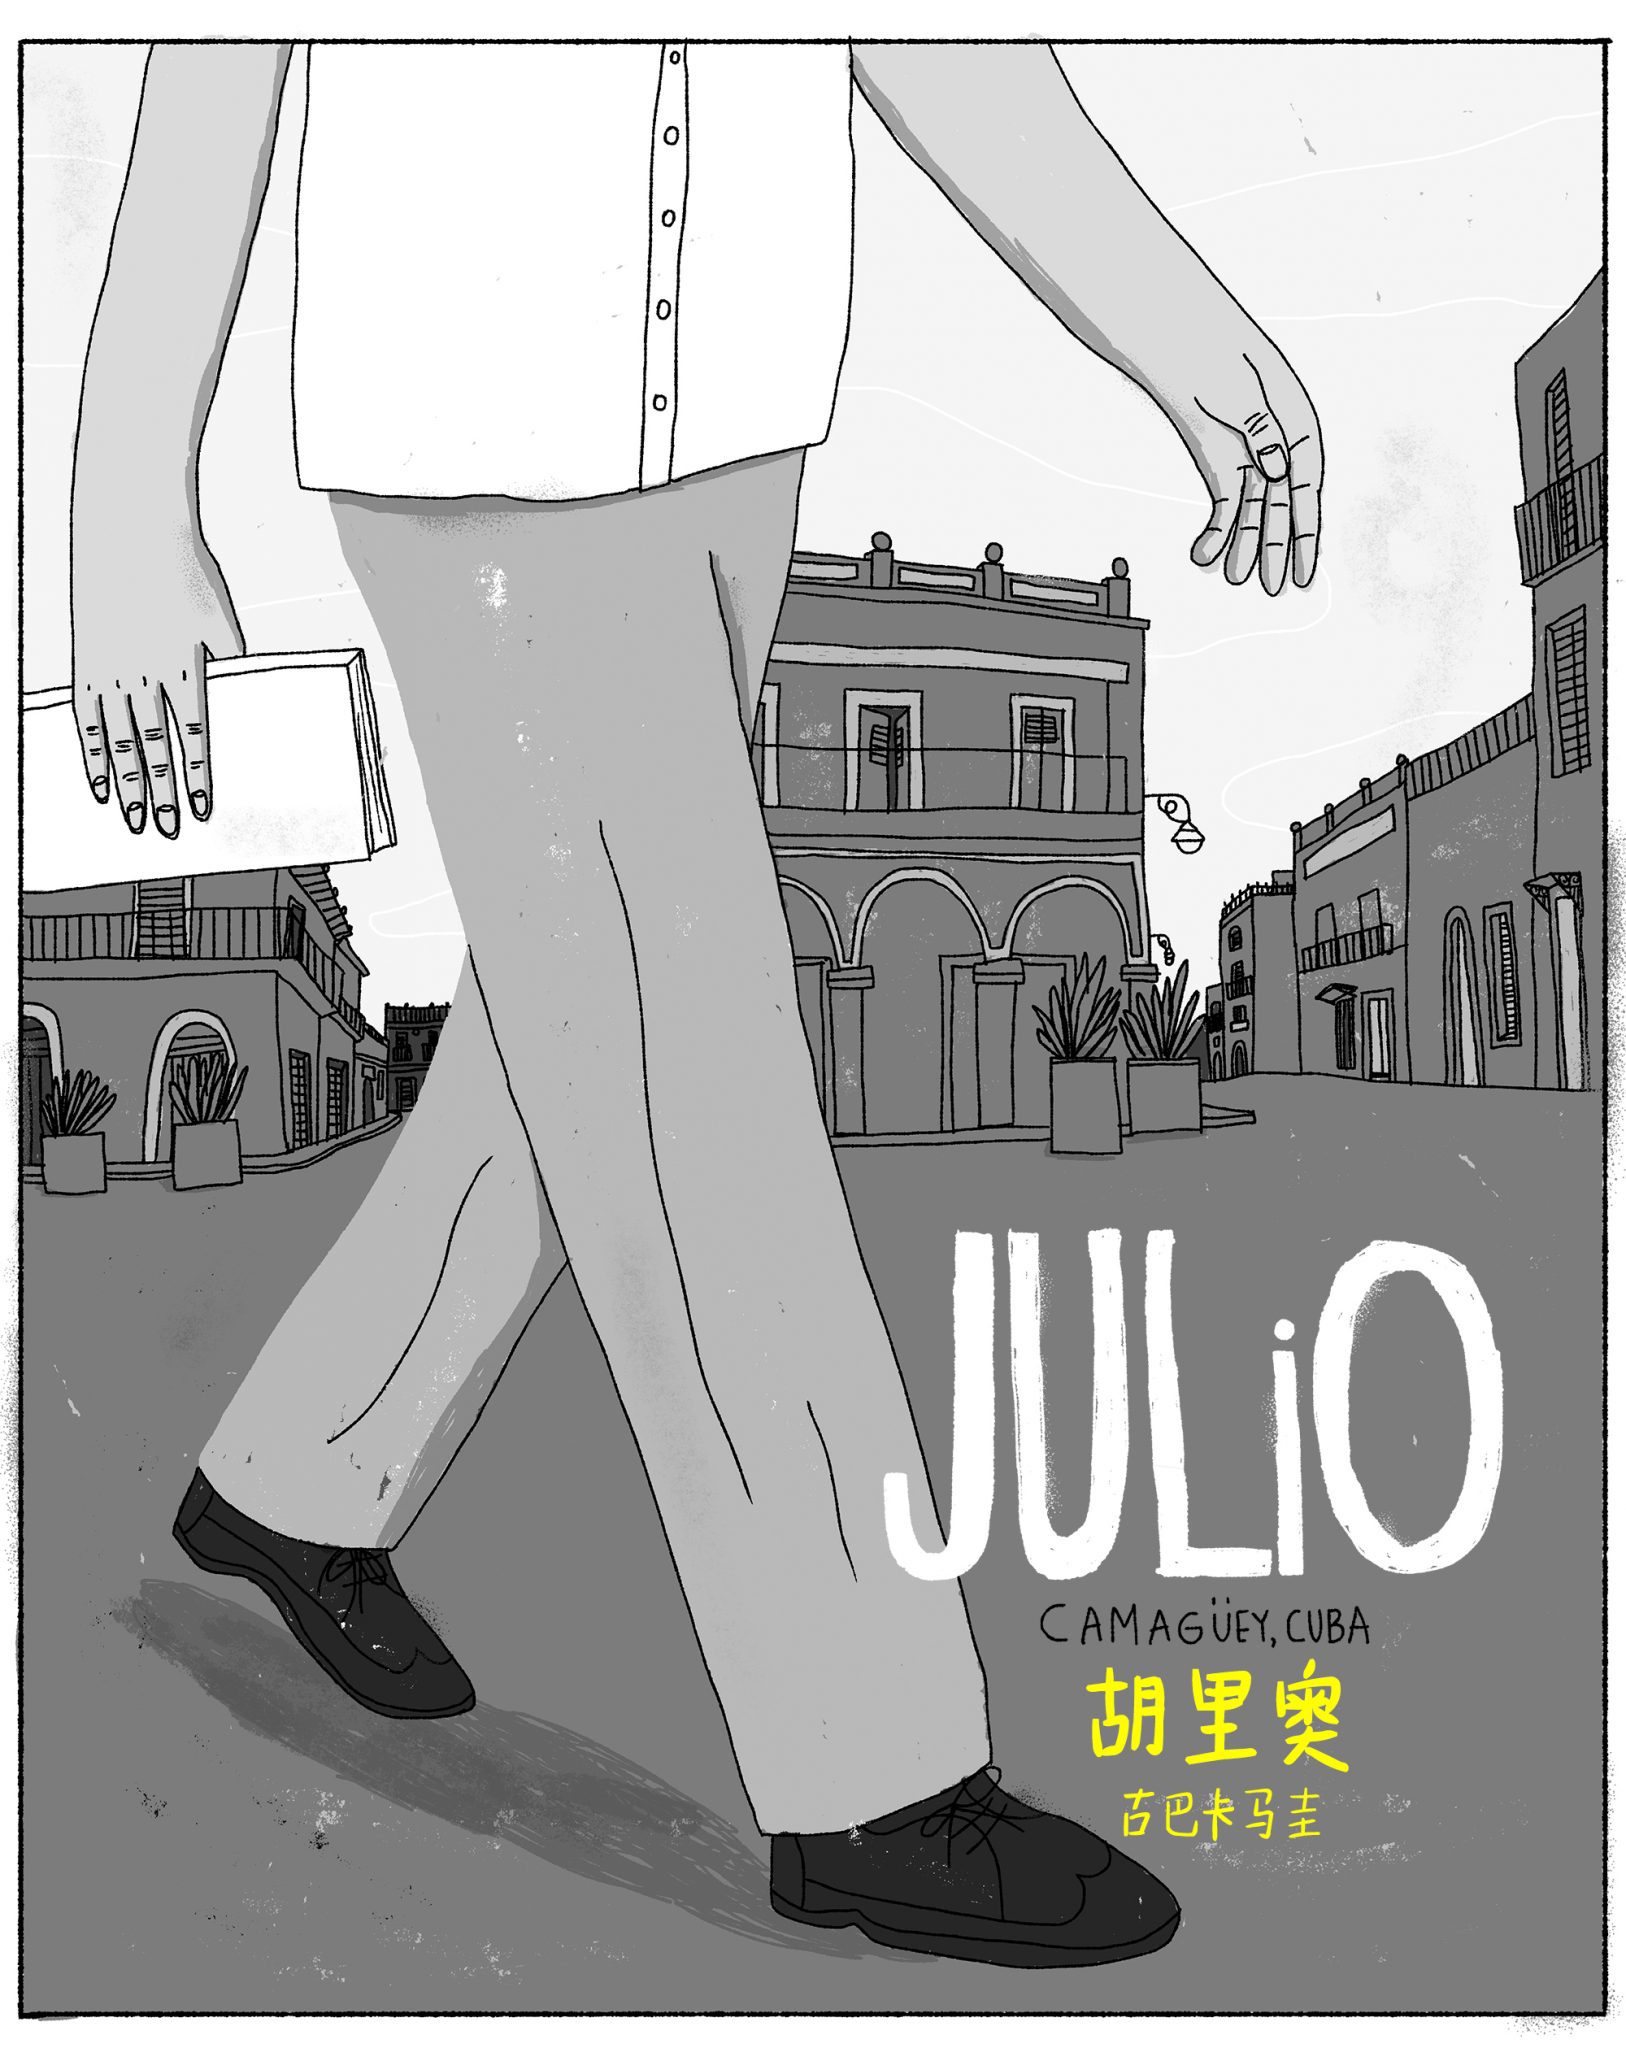 漫画古巴 - 英文教师 Julio 胡里奥